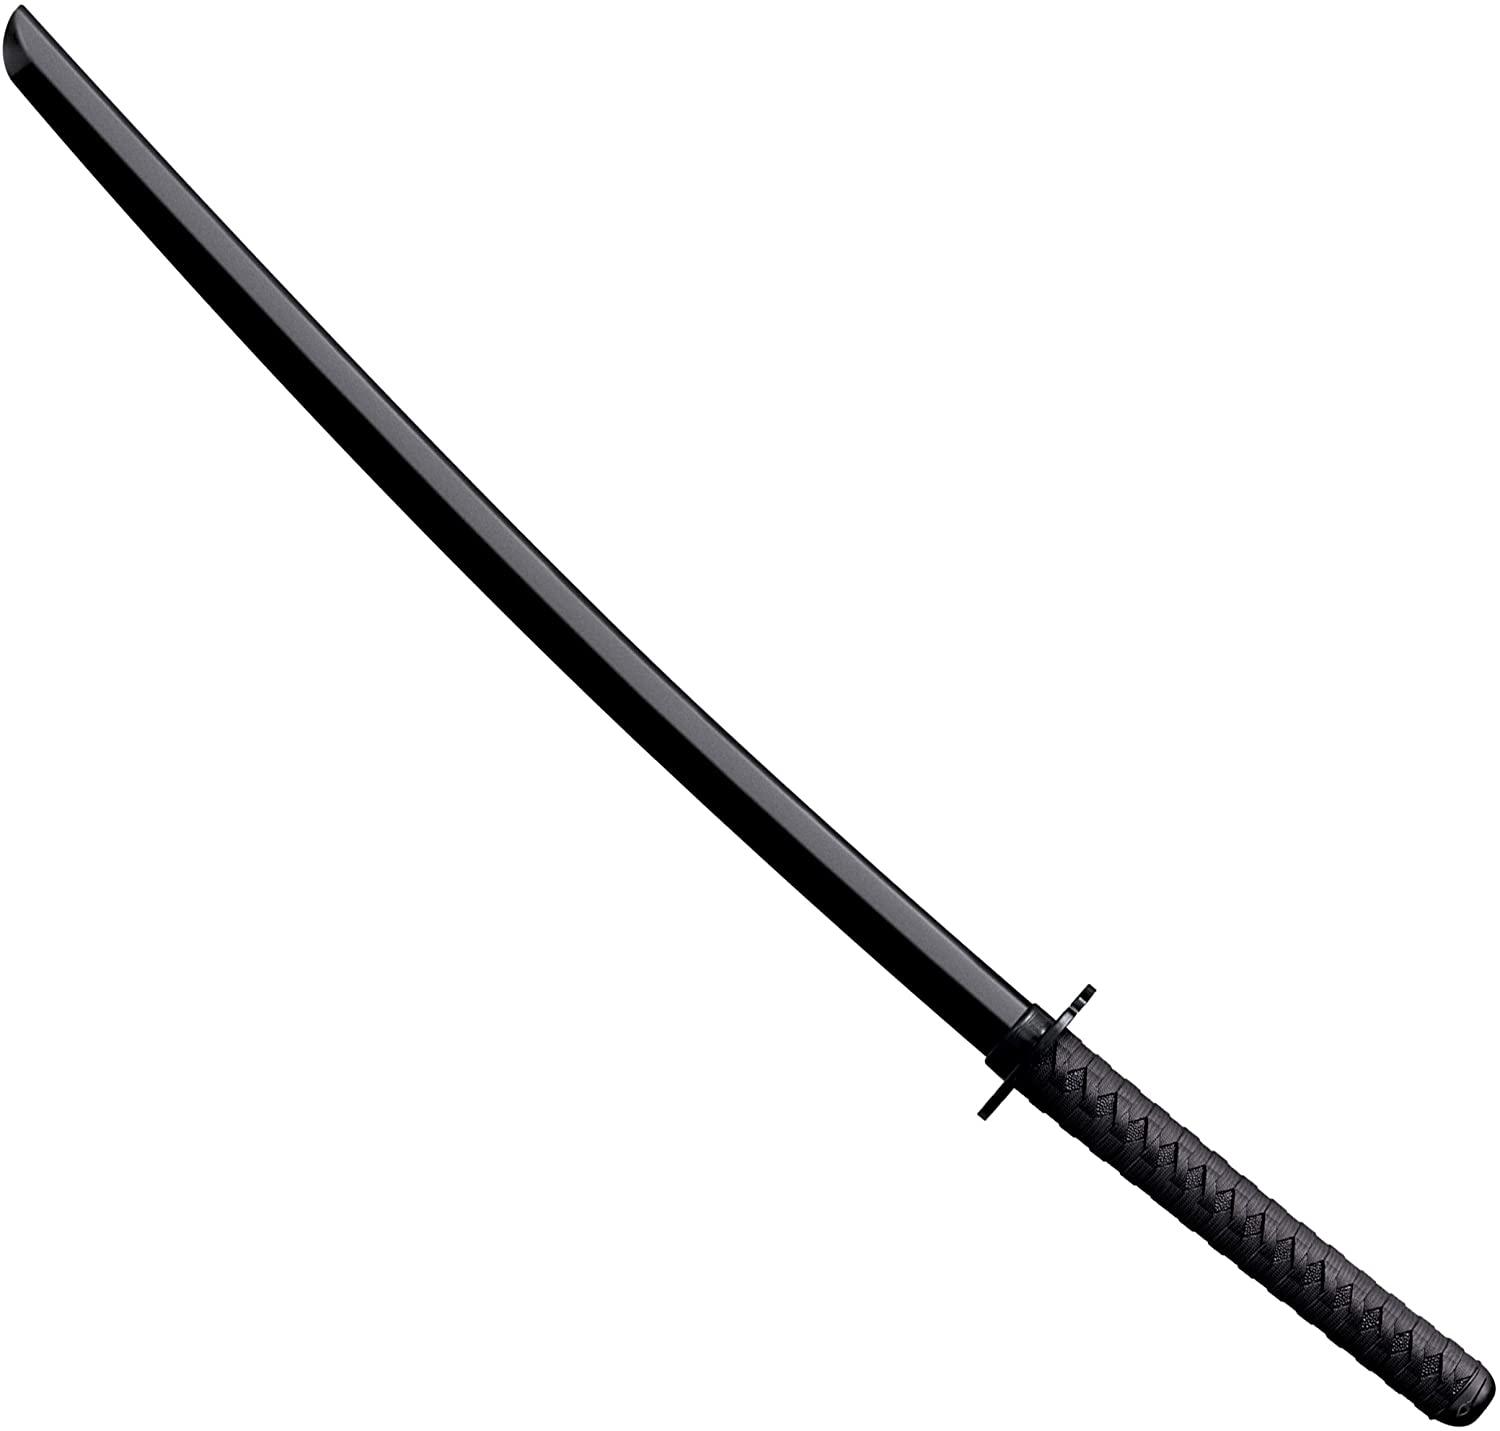 Cold Steel Bokken Martial Arts Polypropylene Training Sword for $19.99